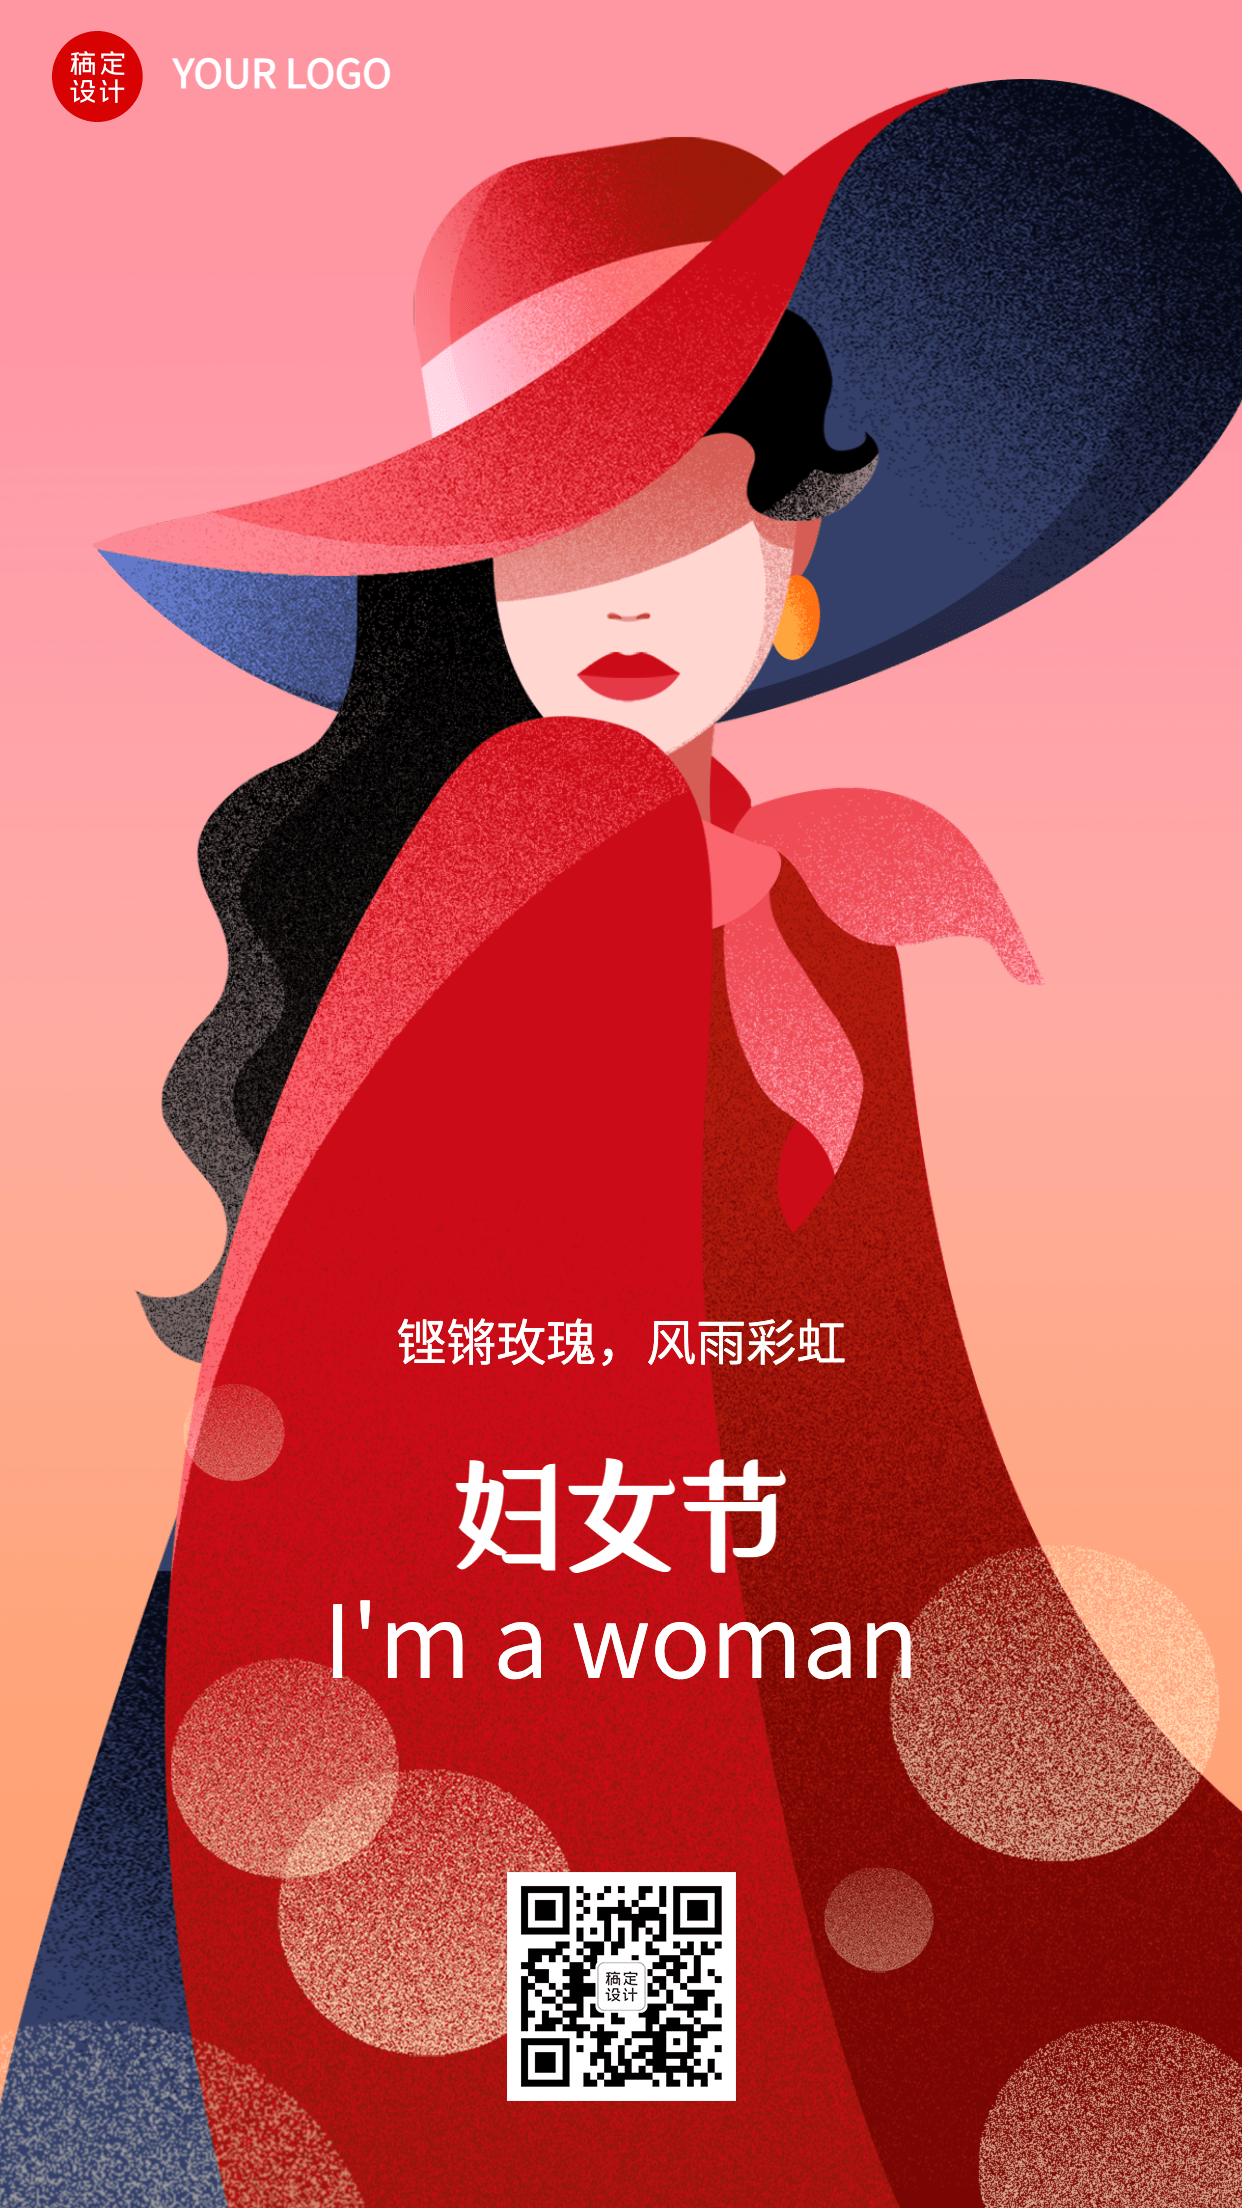 妇女节节日祝福插画女孩手机海报